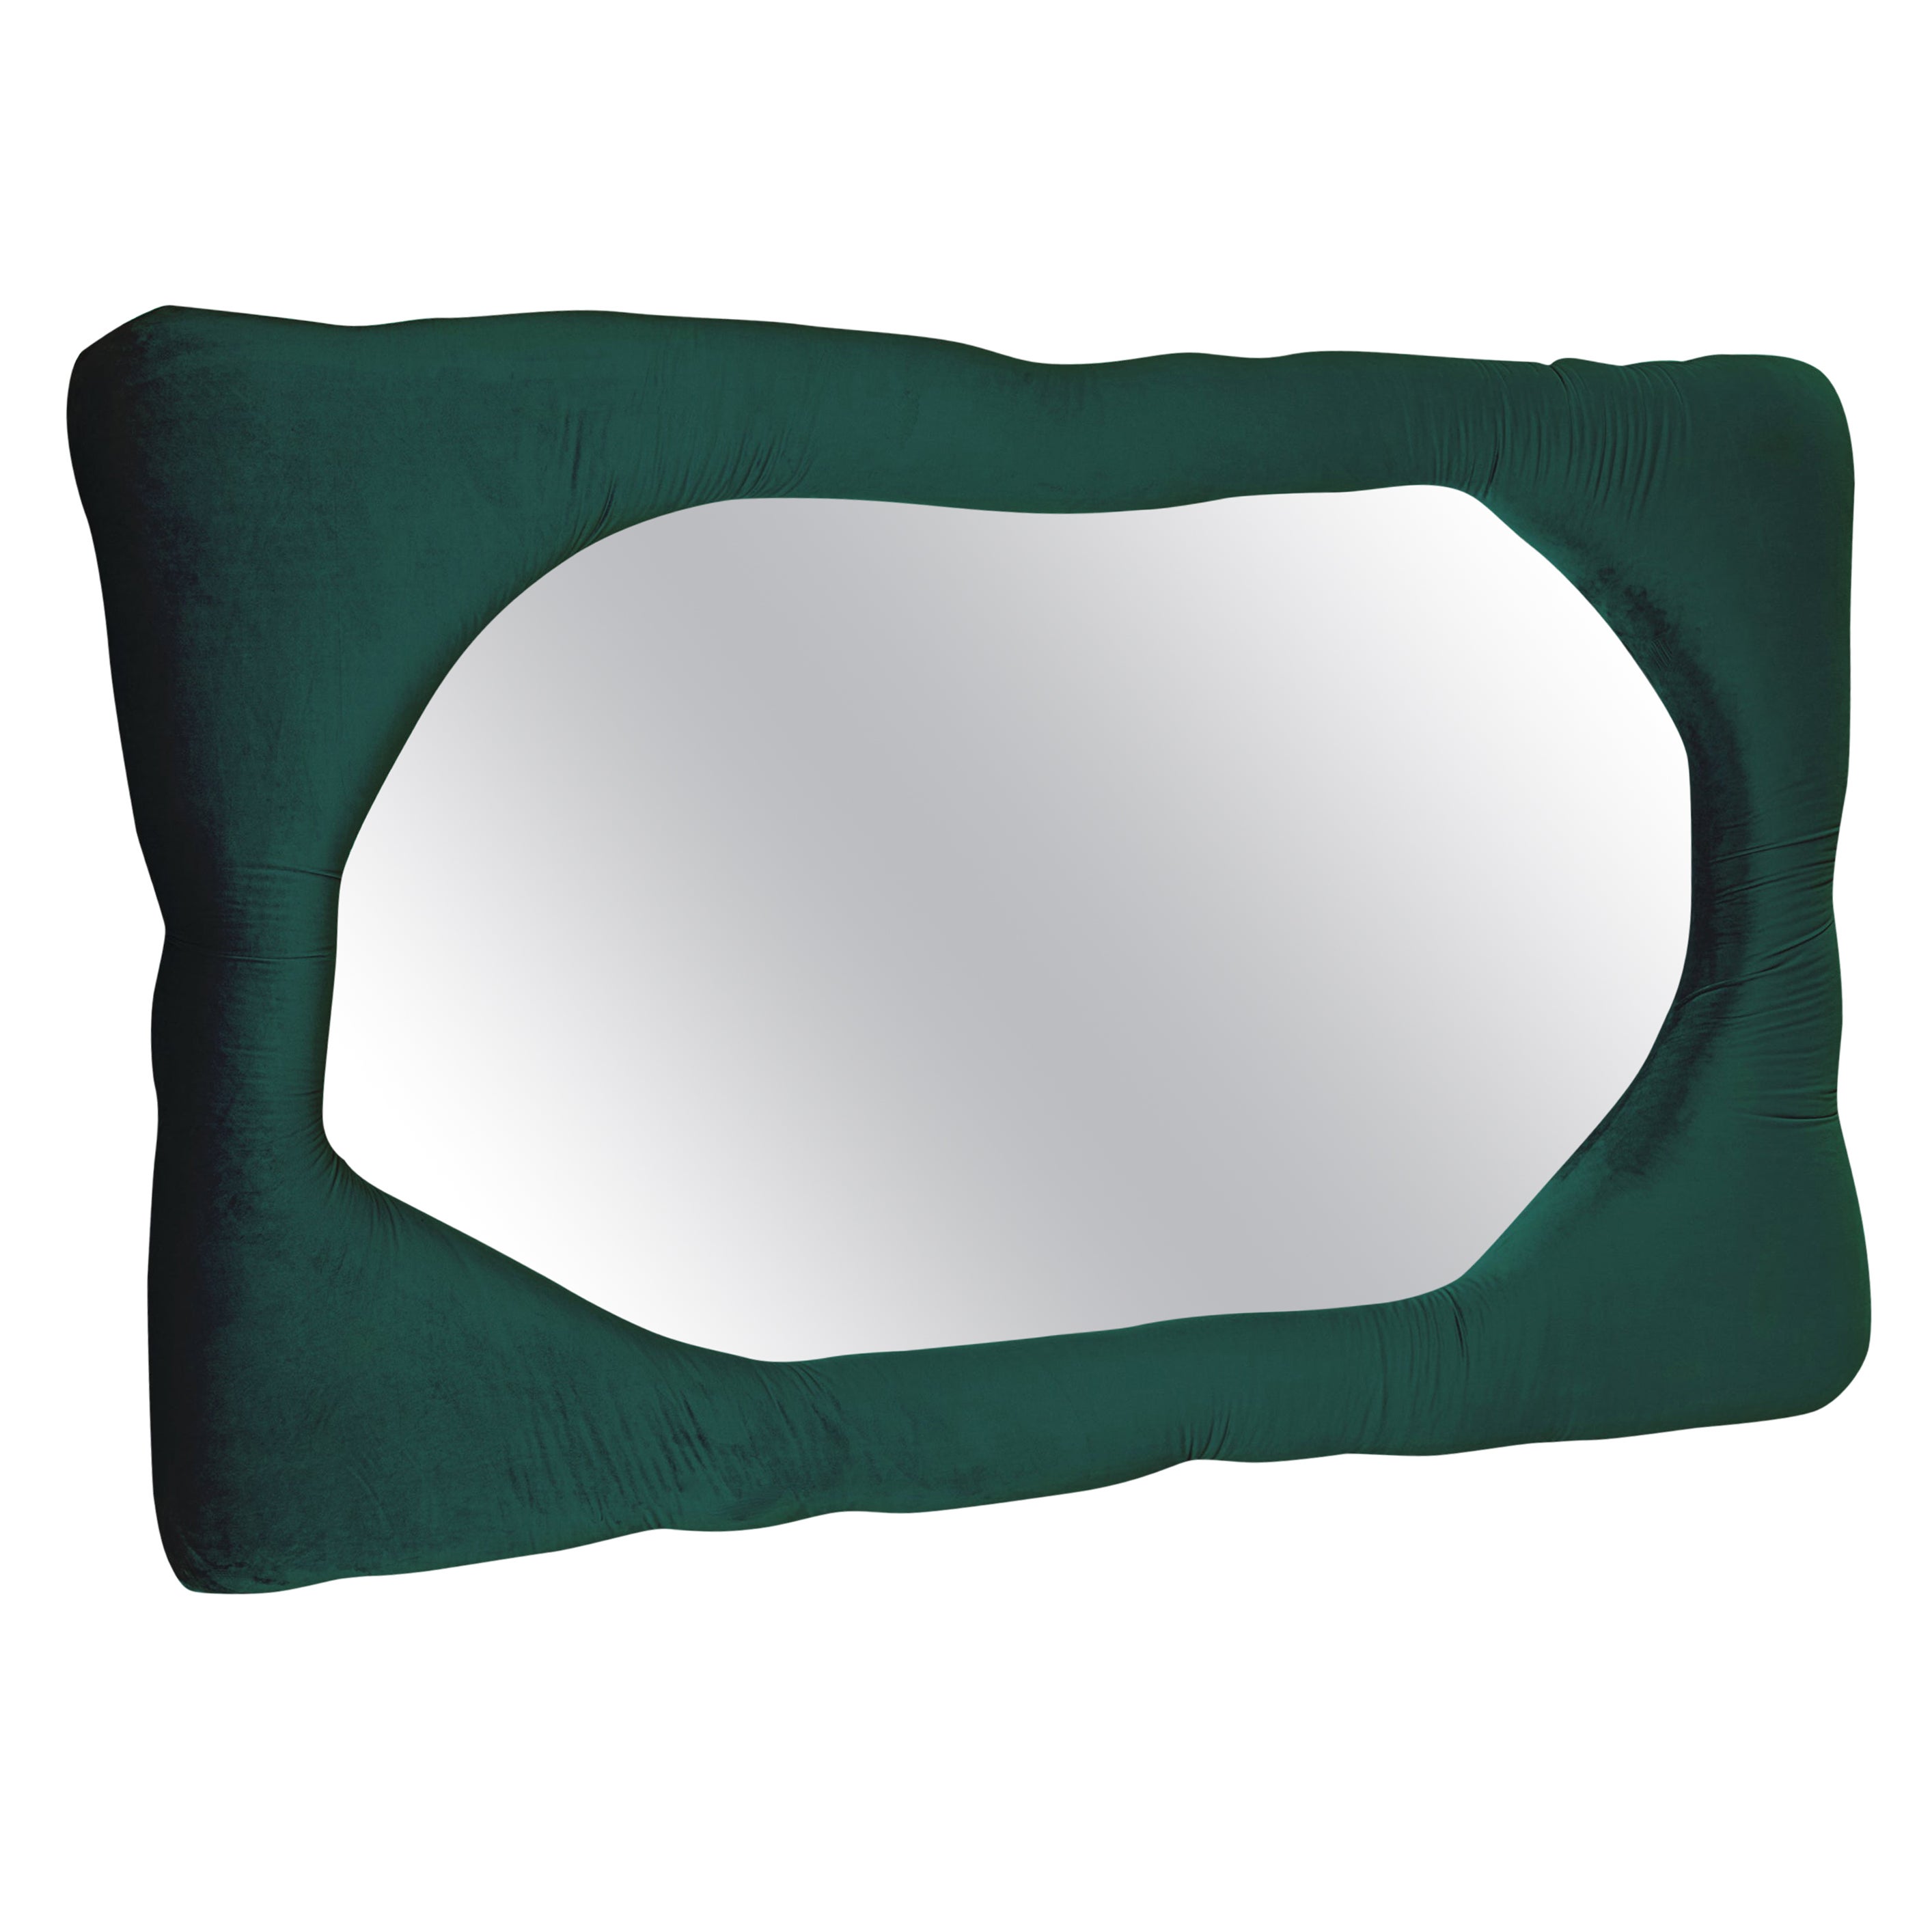 Biomorpher Samt-Spiegel in Fichtengrün von Brandi Howe, REP von Tuleste Factory